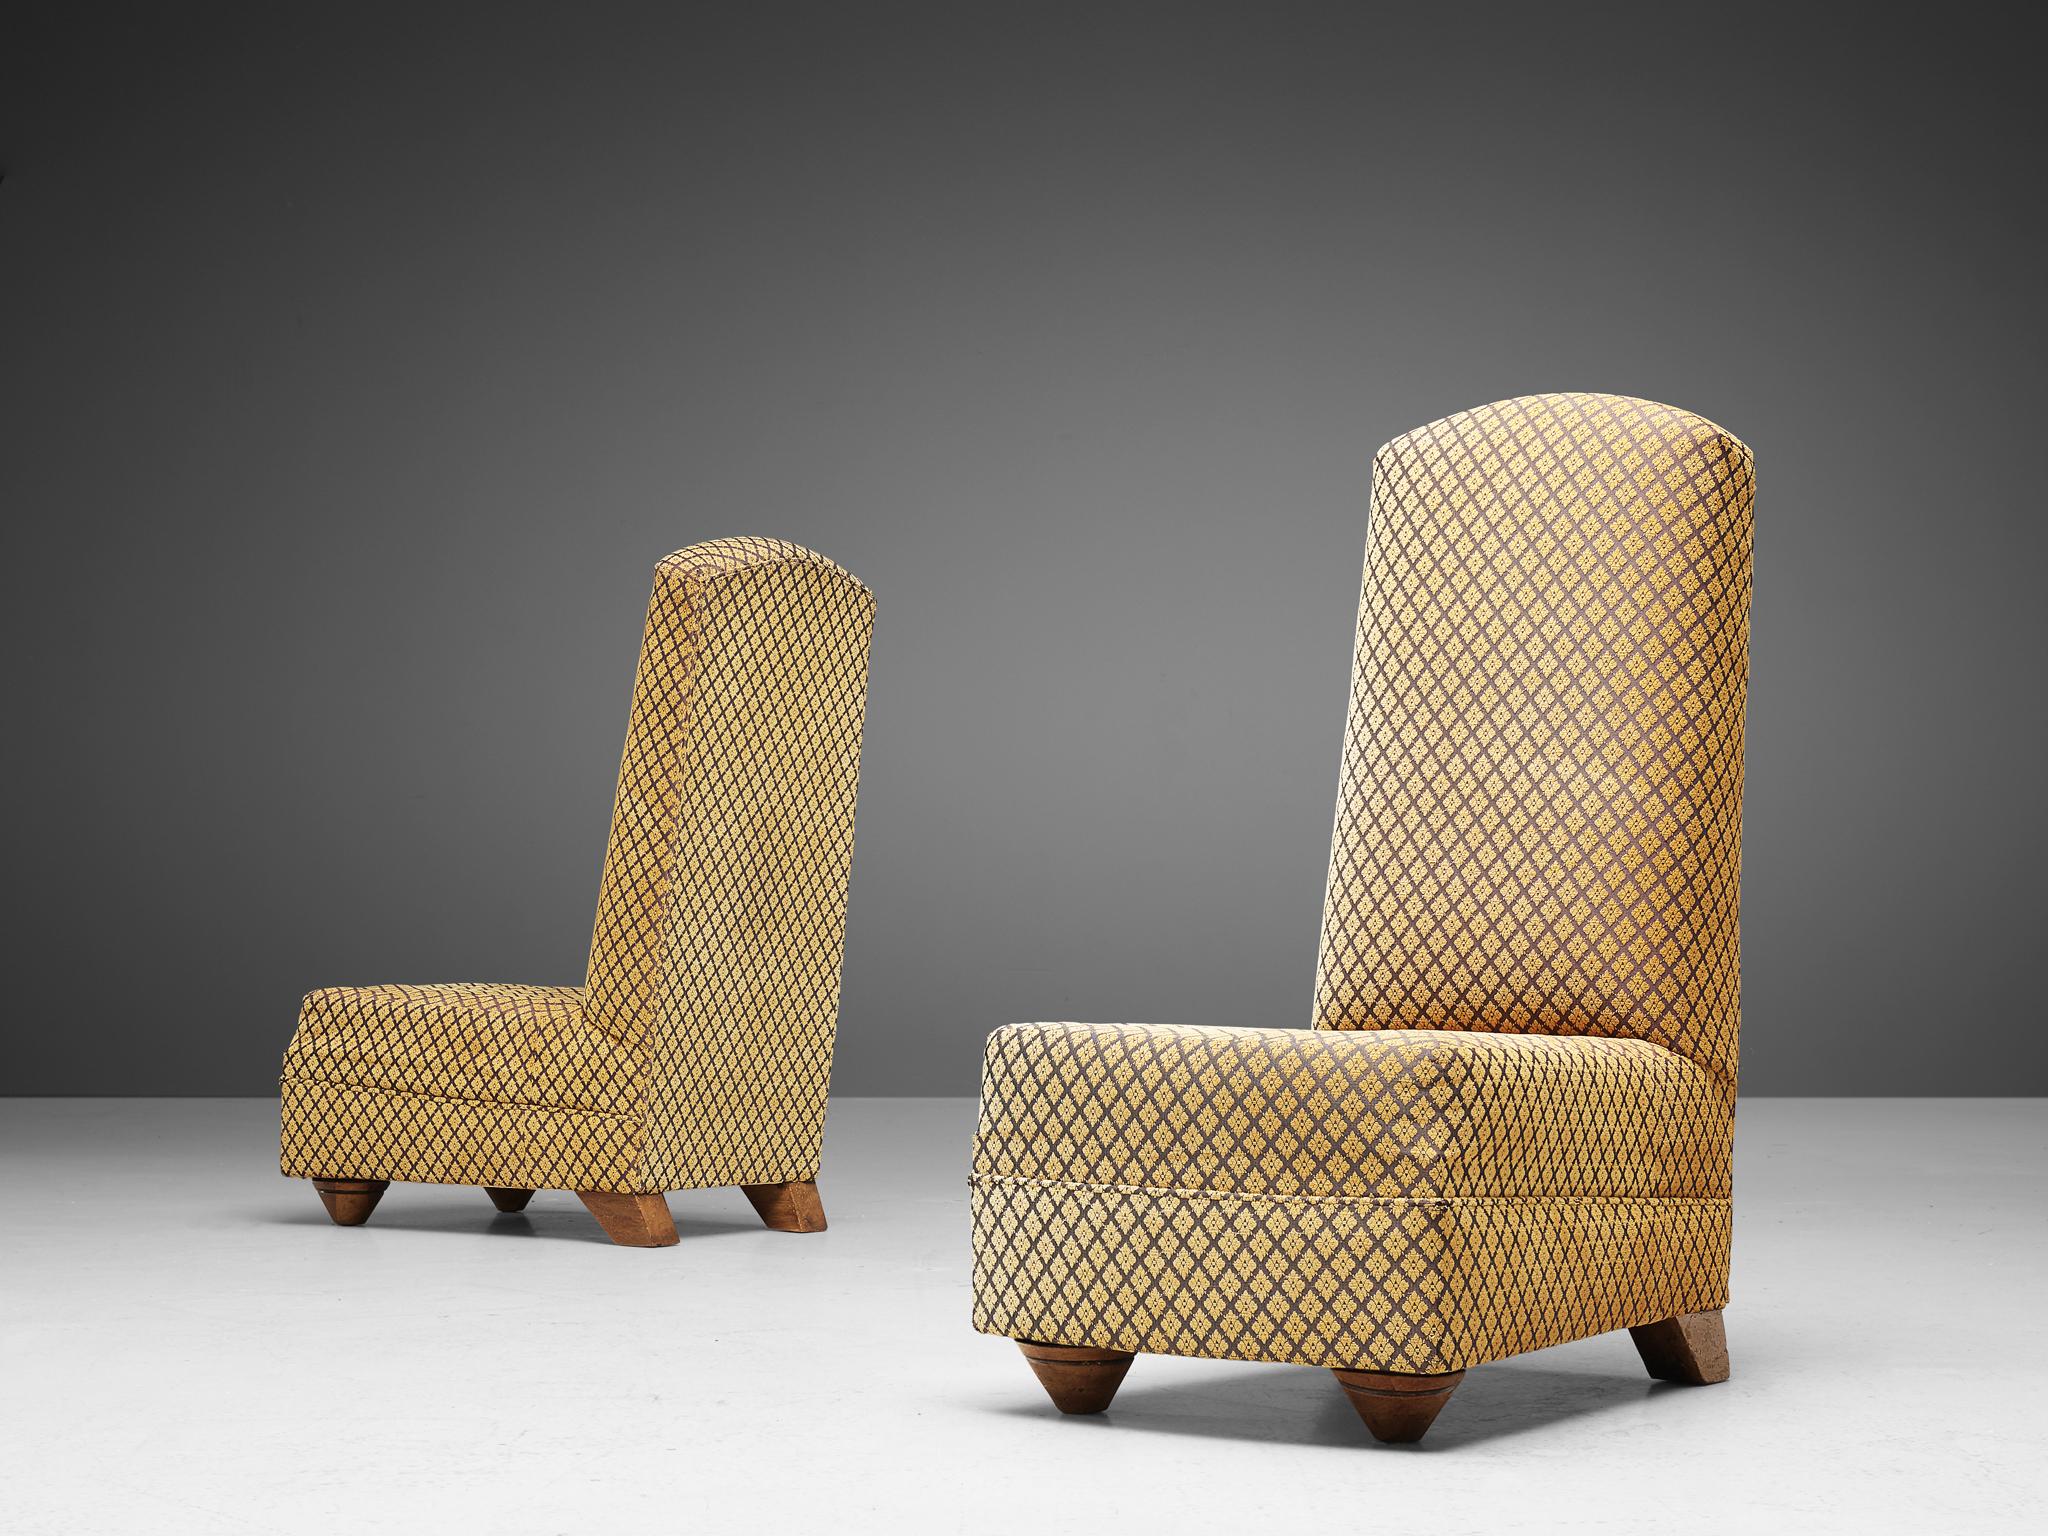 Chaises hautes, tissu, bois, Europe, années 1930

Quatre chaises à dossier haut avec un revêtement floral texturé ocre. Le siège est surélevé par des pieds coniques en bois à l'avant, avec une sculpture décorative tout autour, ce qui confère à ces